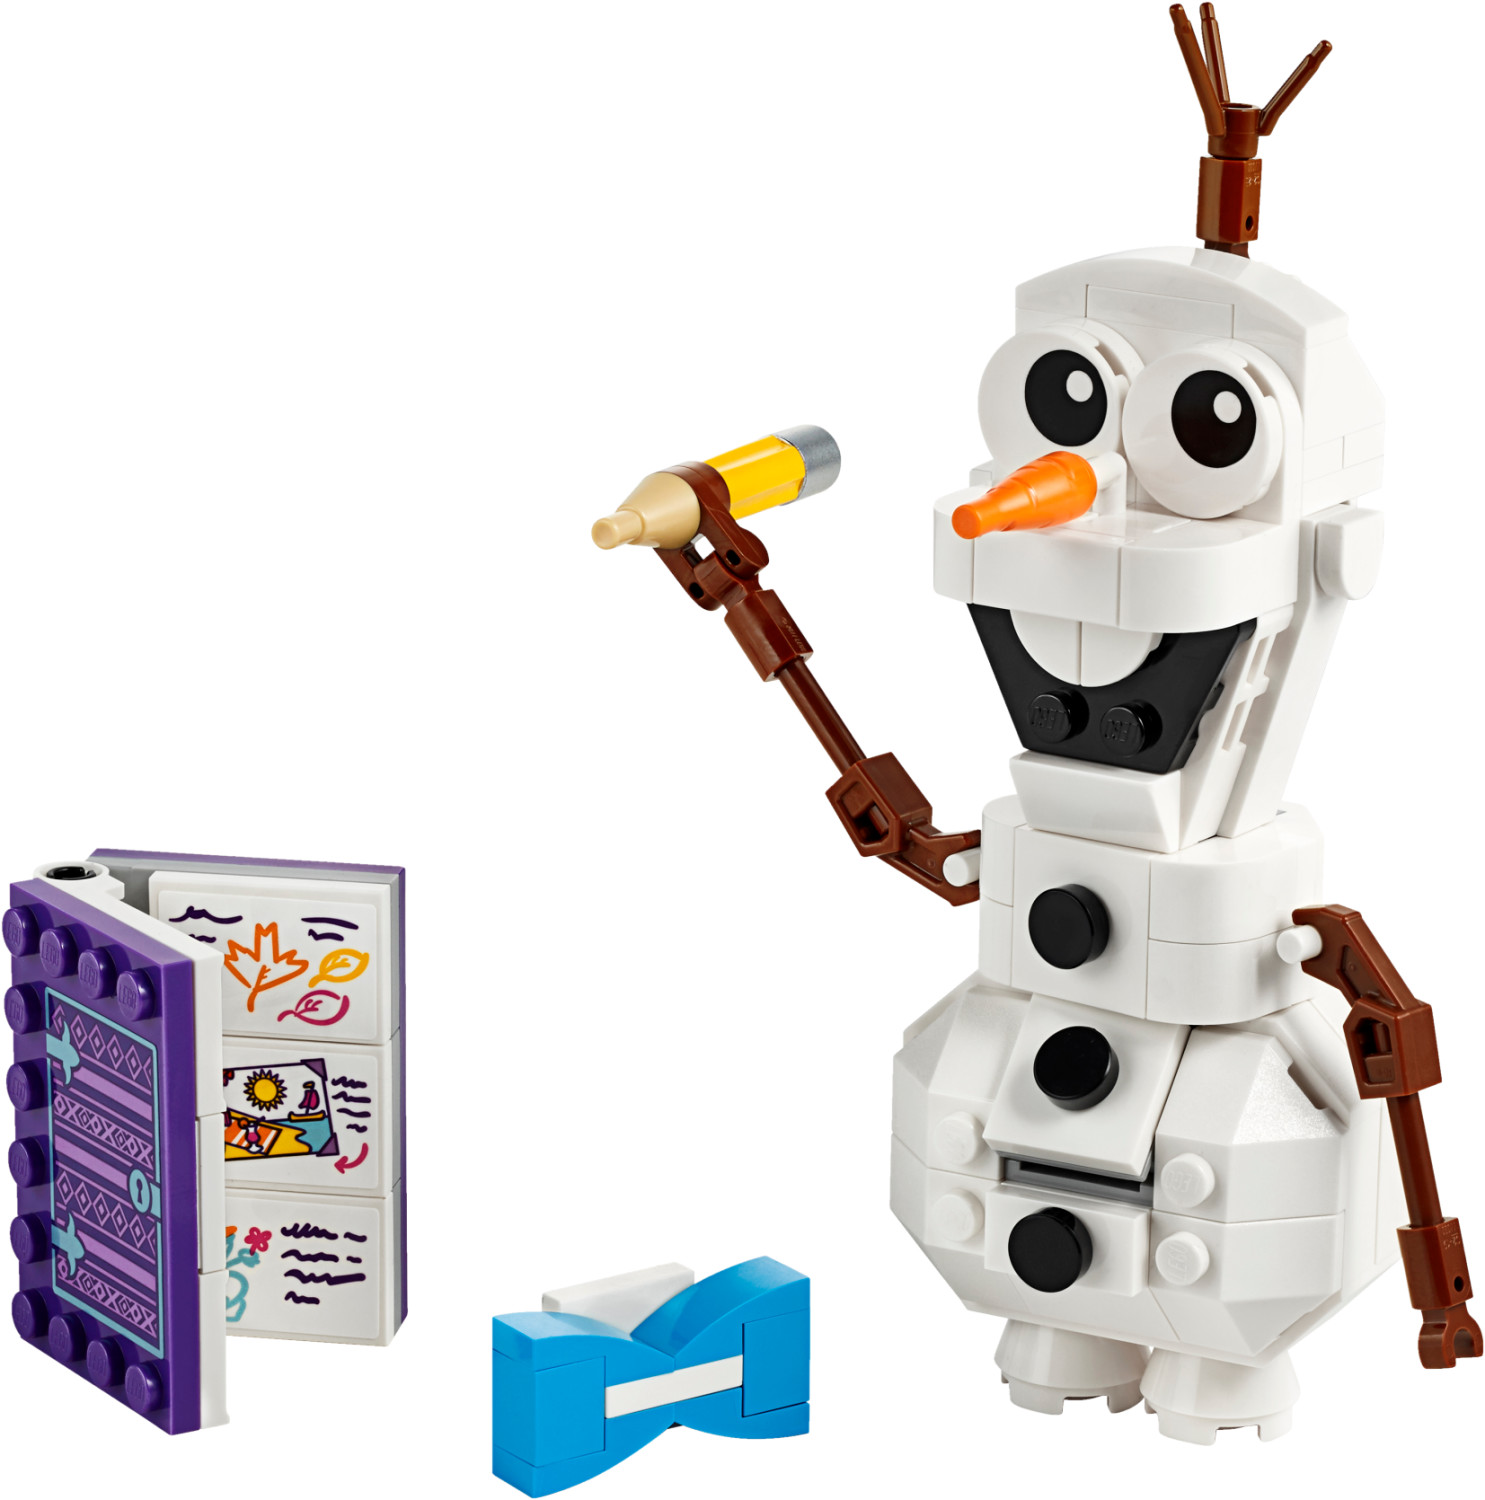 LEGO Disney Frozen II - Olaf (41169) a € 14,99 (oggi)